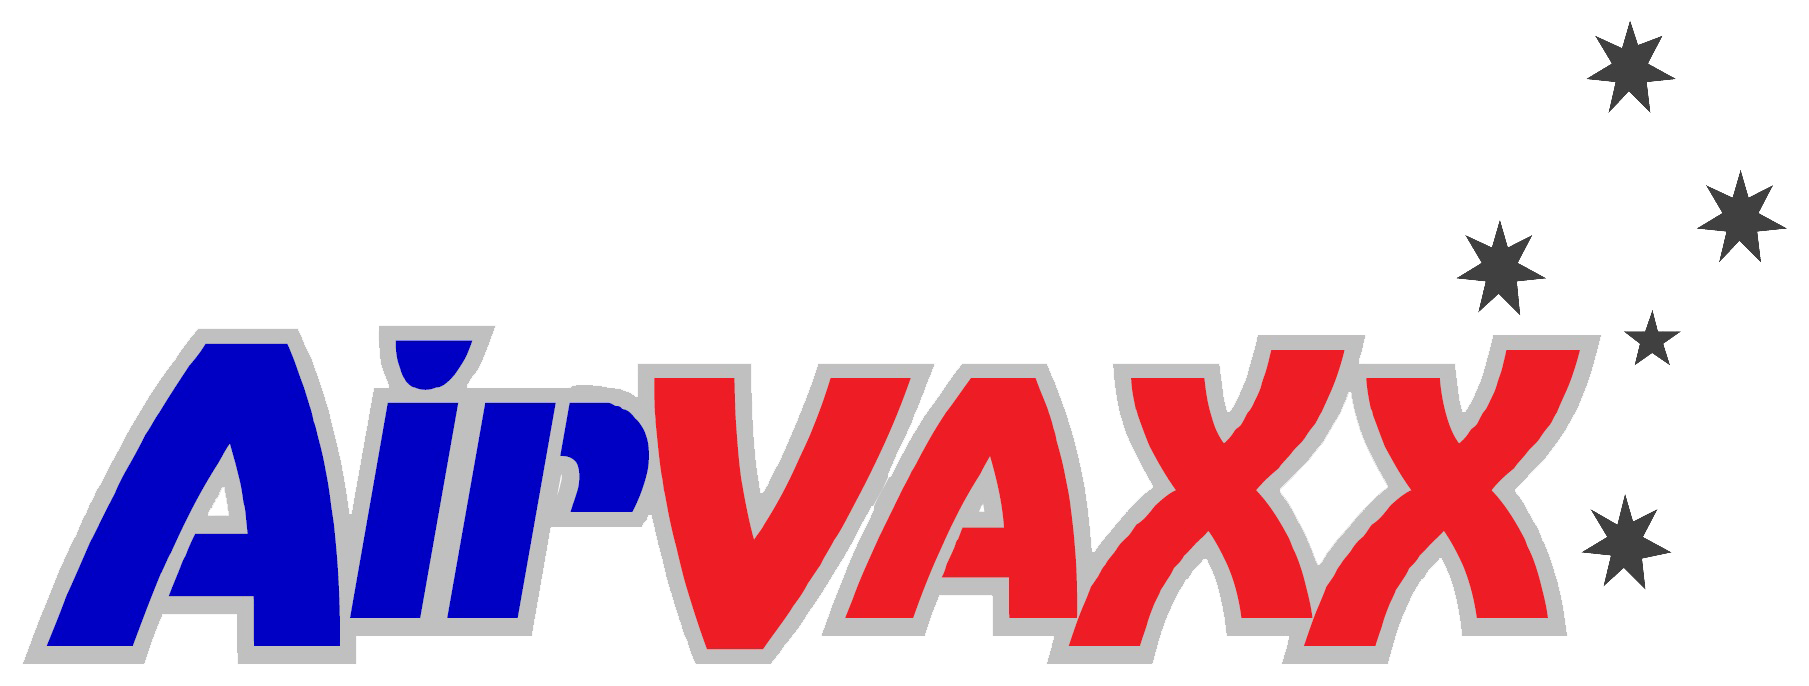 AirVaxx logo